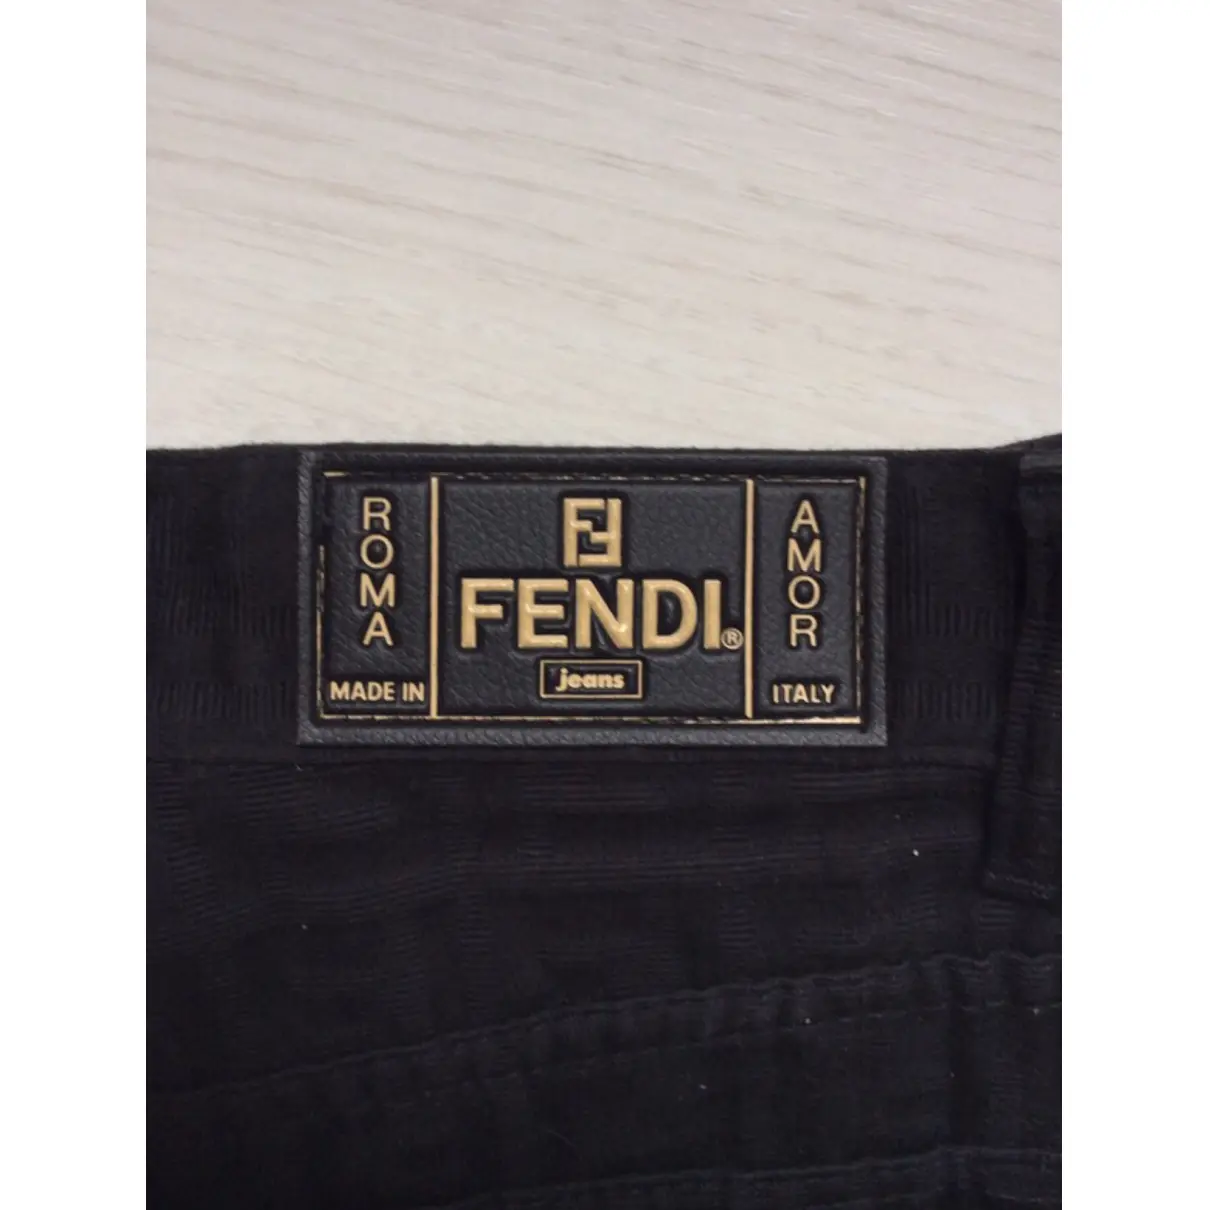 Straight pants Fendi - Vintage